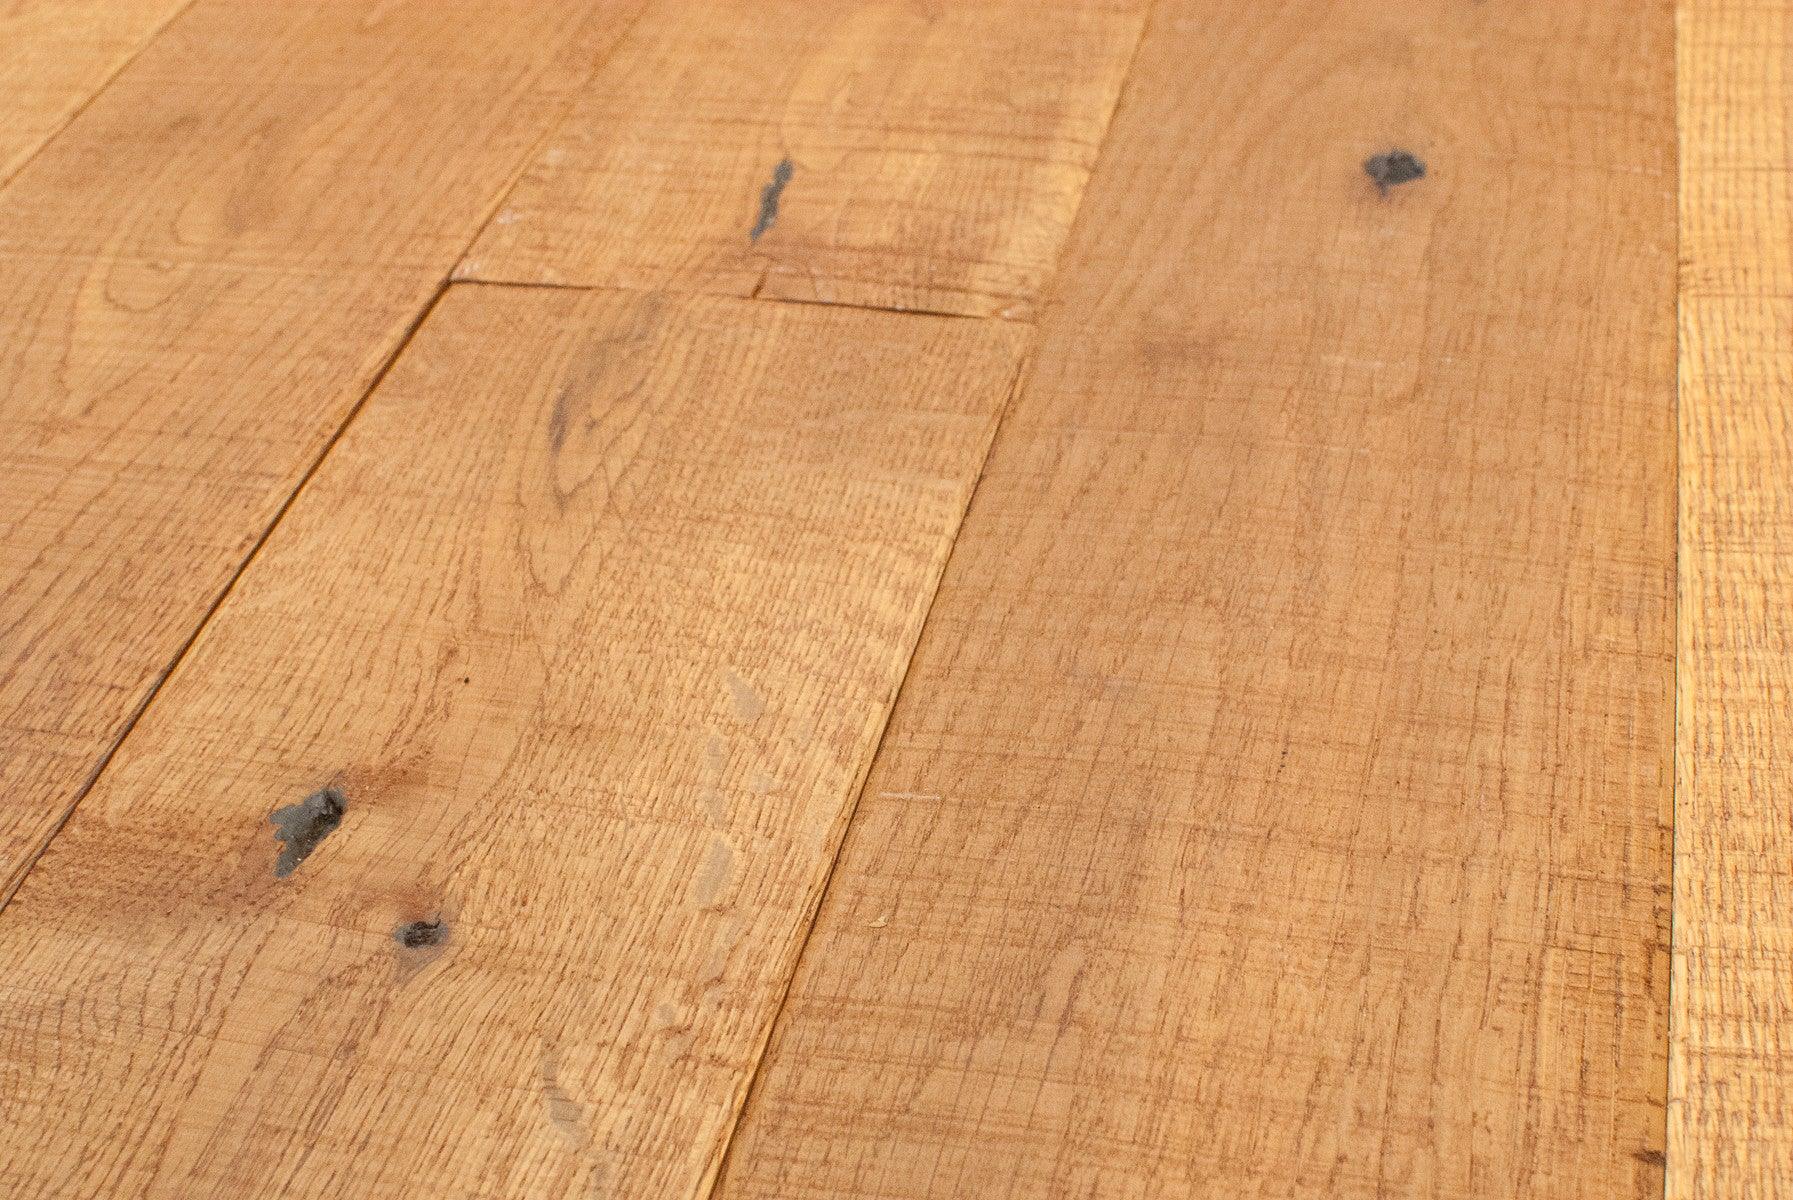 Rustic Smoke Stain 5 White Oak Solid Hardwood Easiklip Floors